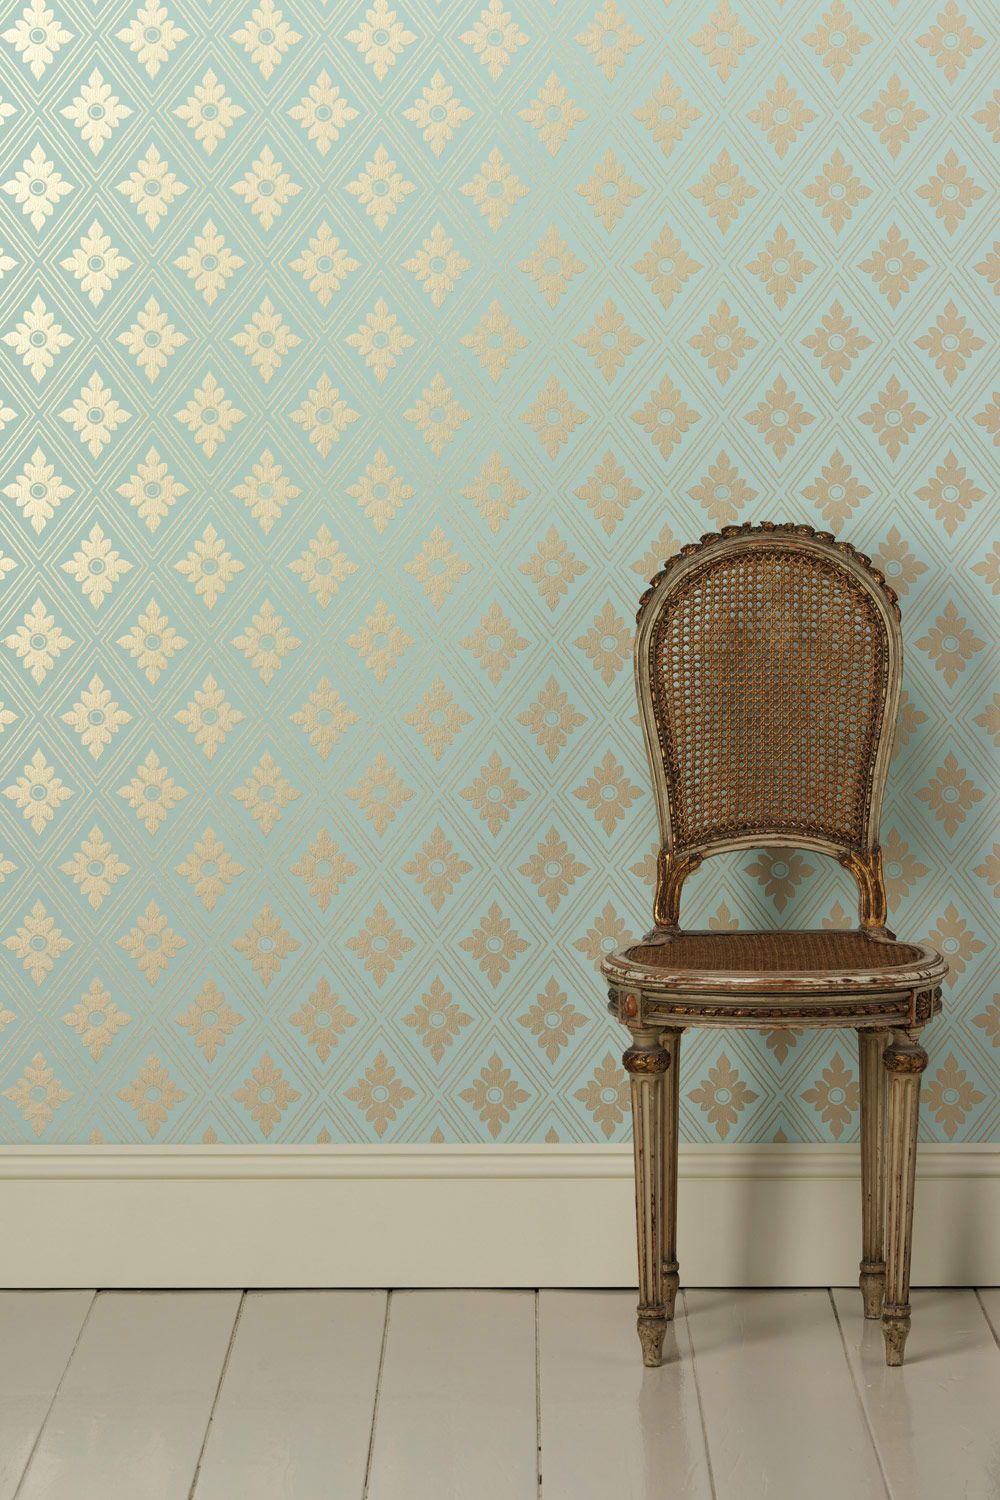 Wallpaper Roll Length - Farrow And Ball Wallpaper Ranelagh , HD Wallpaper & Backgrounds